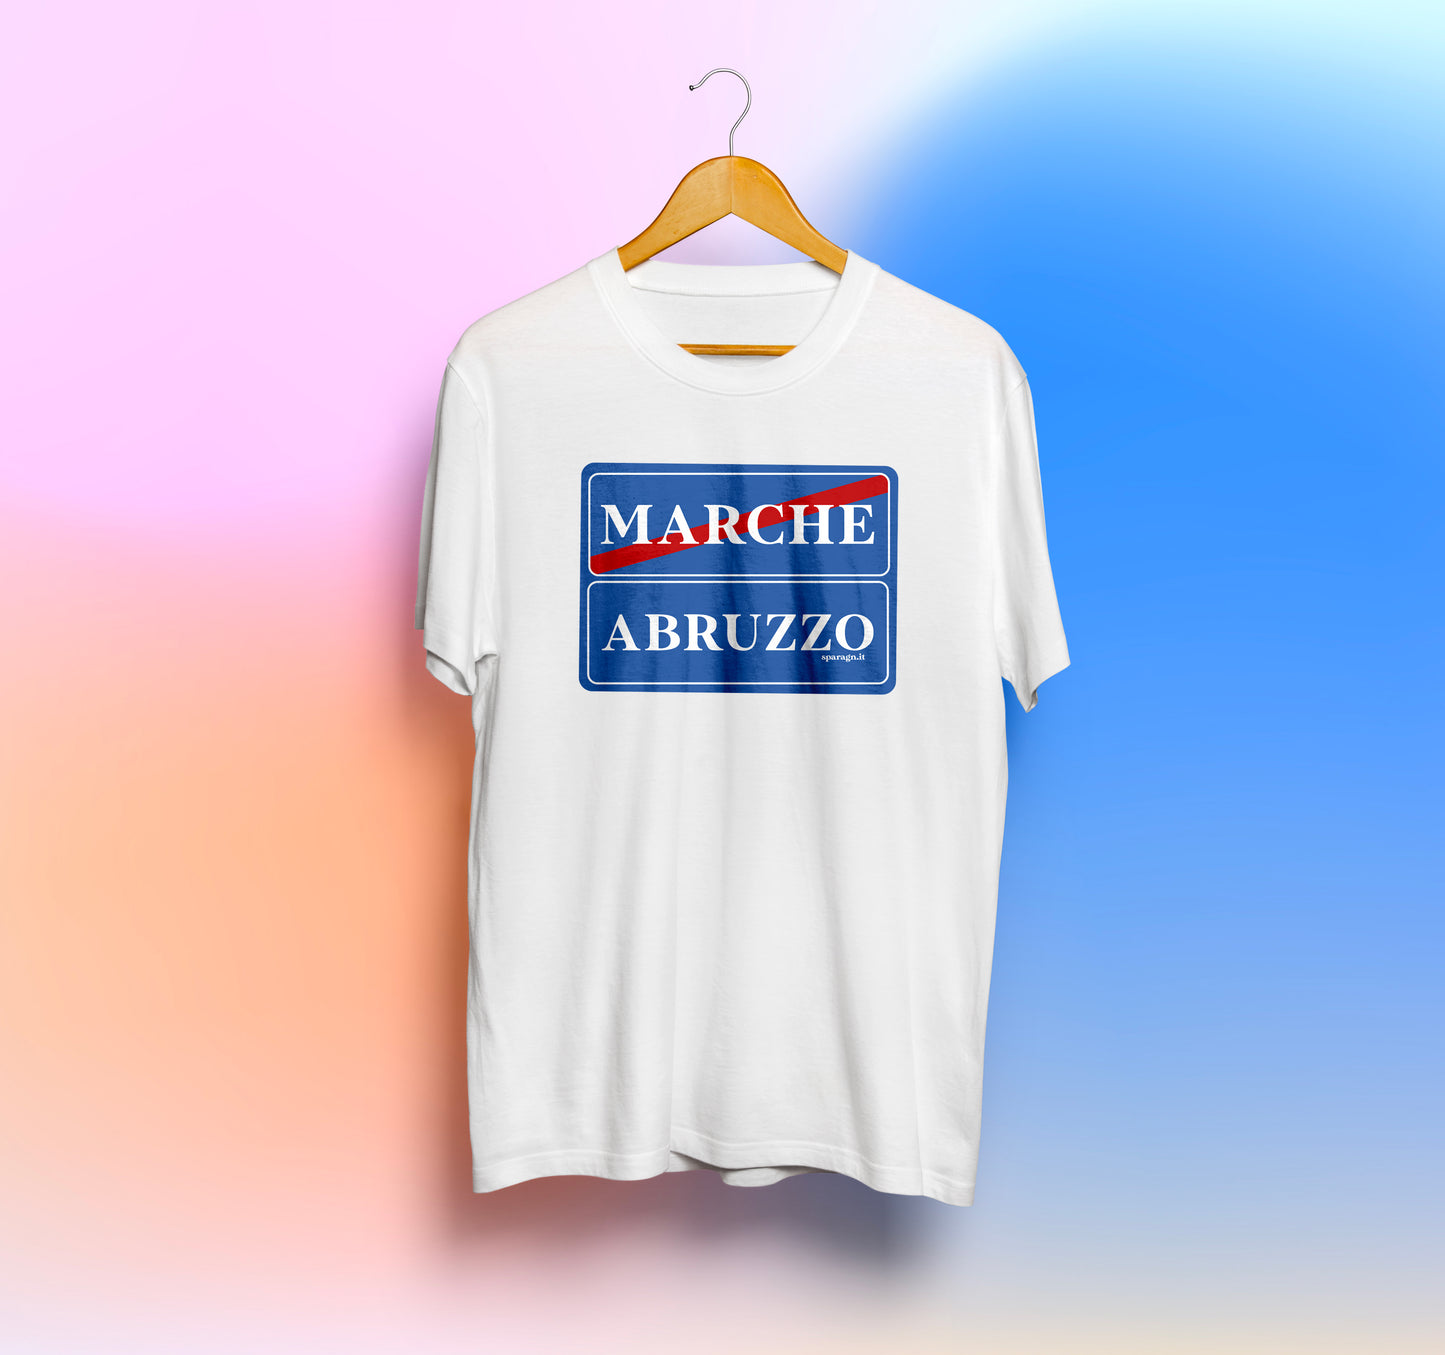 Marche/Abruzzo - T-Shirt